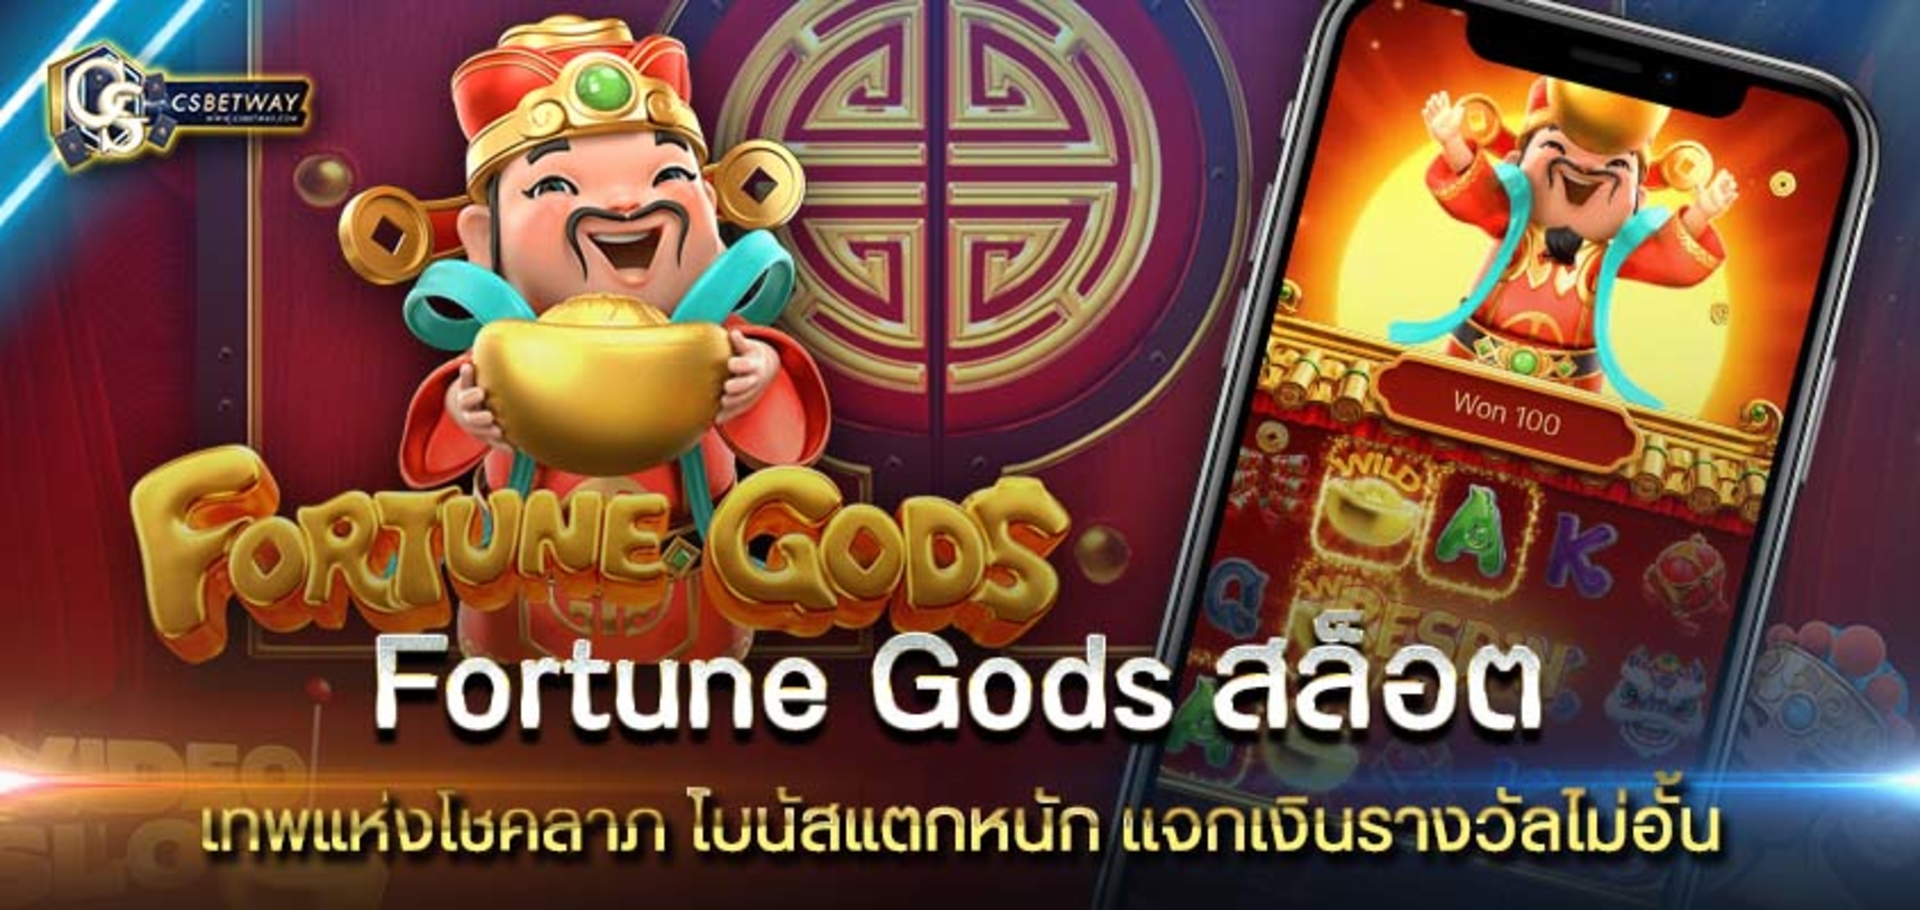 Fortune Gods สล็อต โบนัสแตกหนัก เเจกเงินไม่อั้น ทดลองเล่น Fortune Gods ฟรี